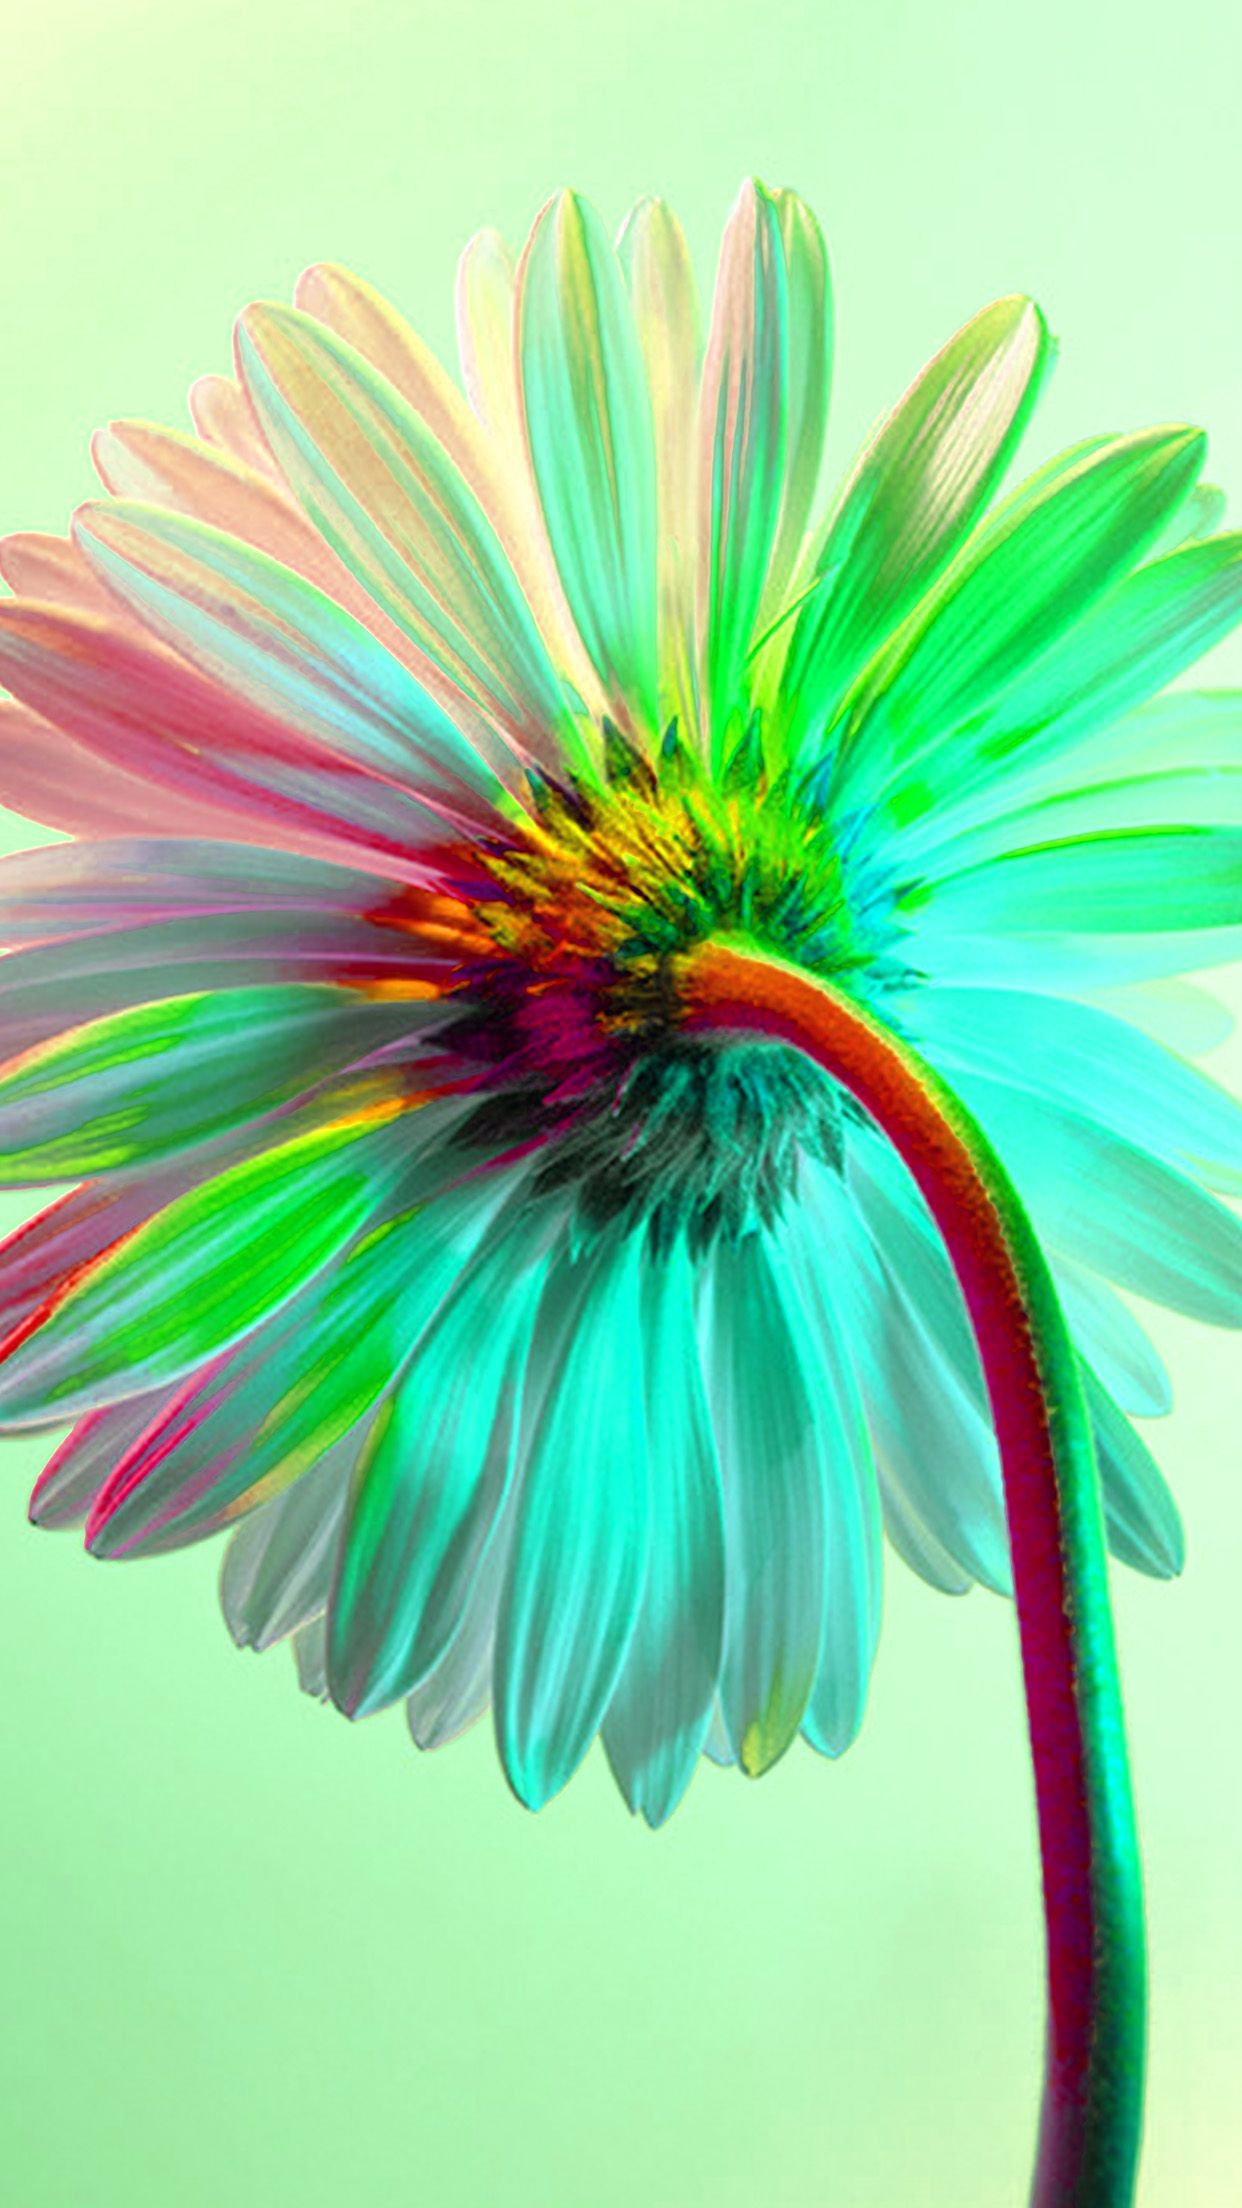 iPhone X wallpaper. art flower rainbow green